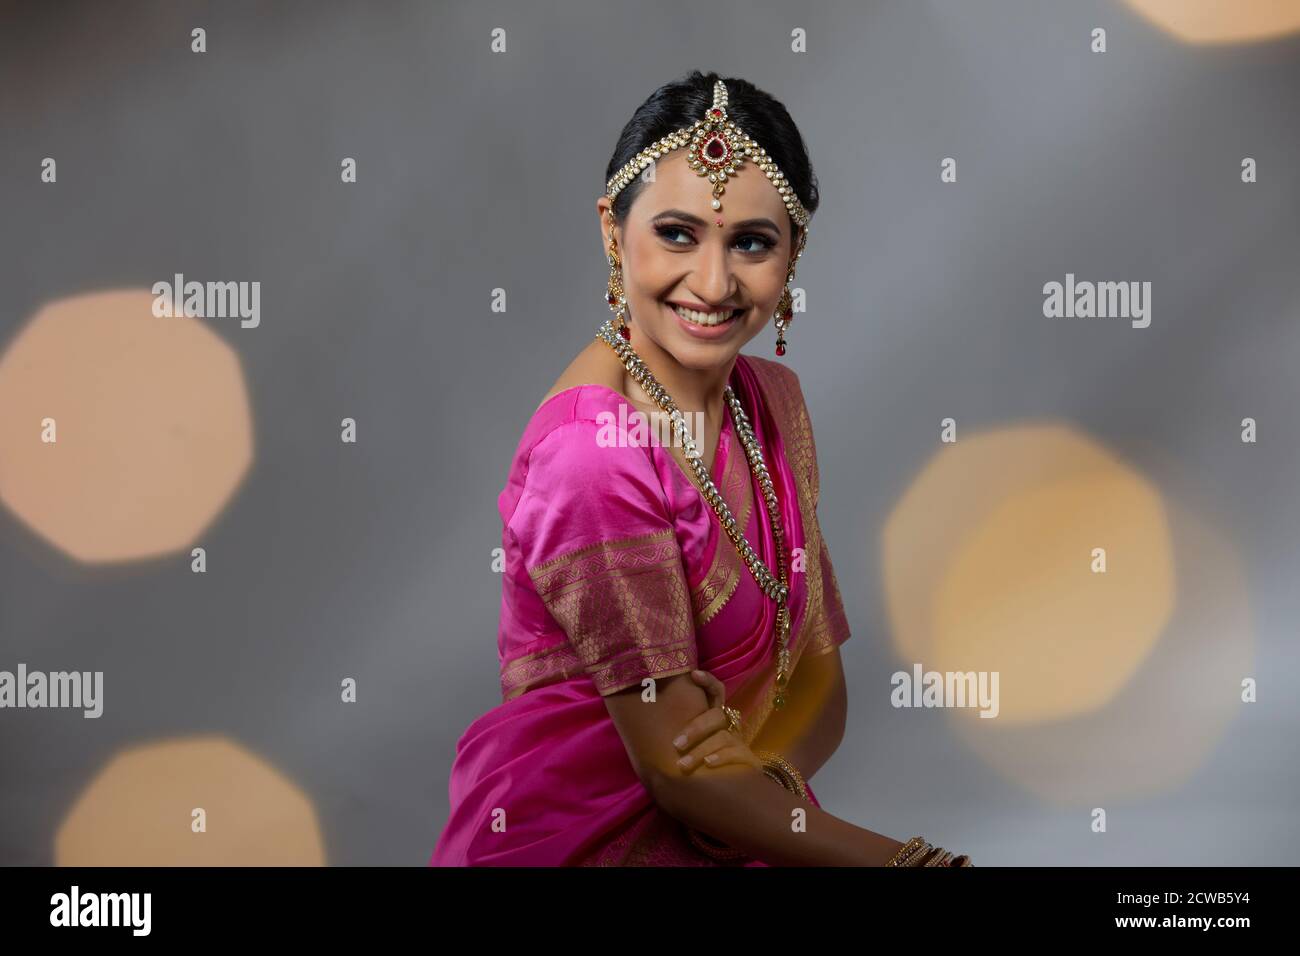 Portrait d'une dame dans une belle saree rose souriante Banque D'Images